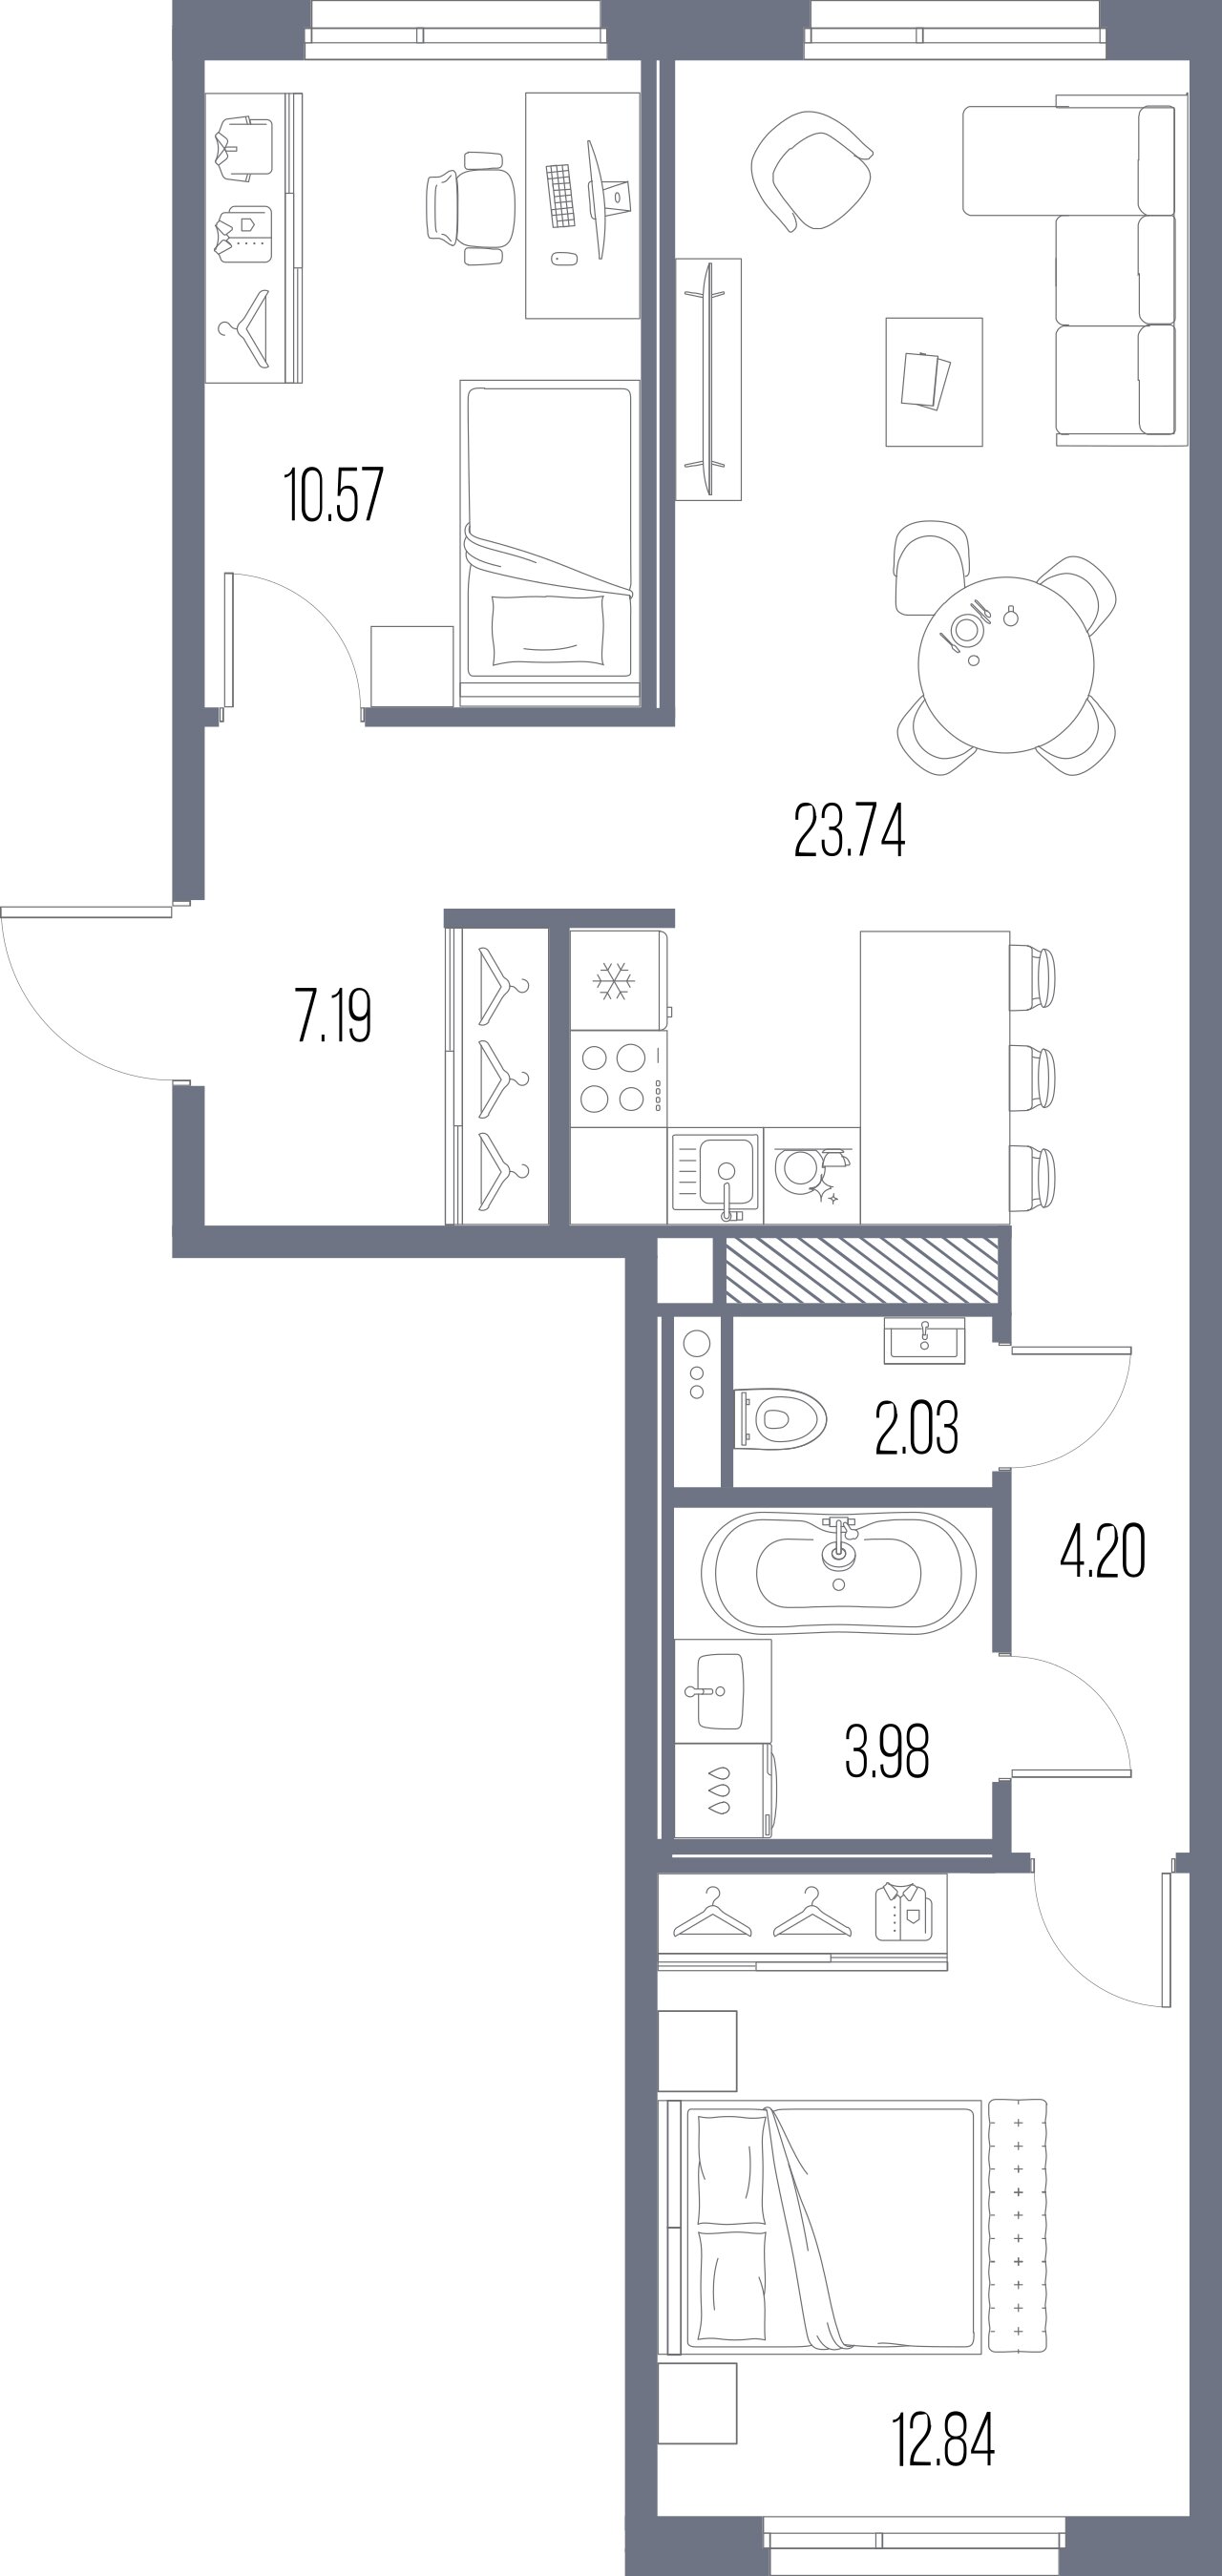 2-комнатная квартира  №114 в Legenda Васильевского: 64.55 м², этаж 3 - купить в Санкт-Петербурге